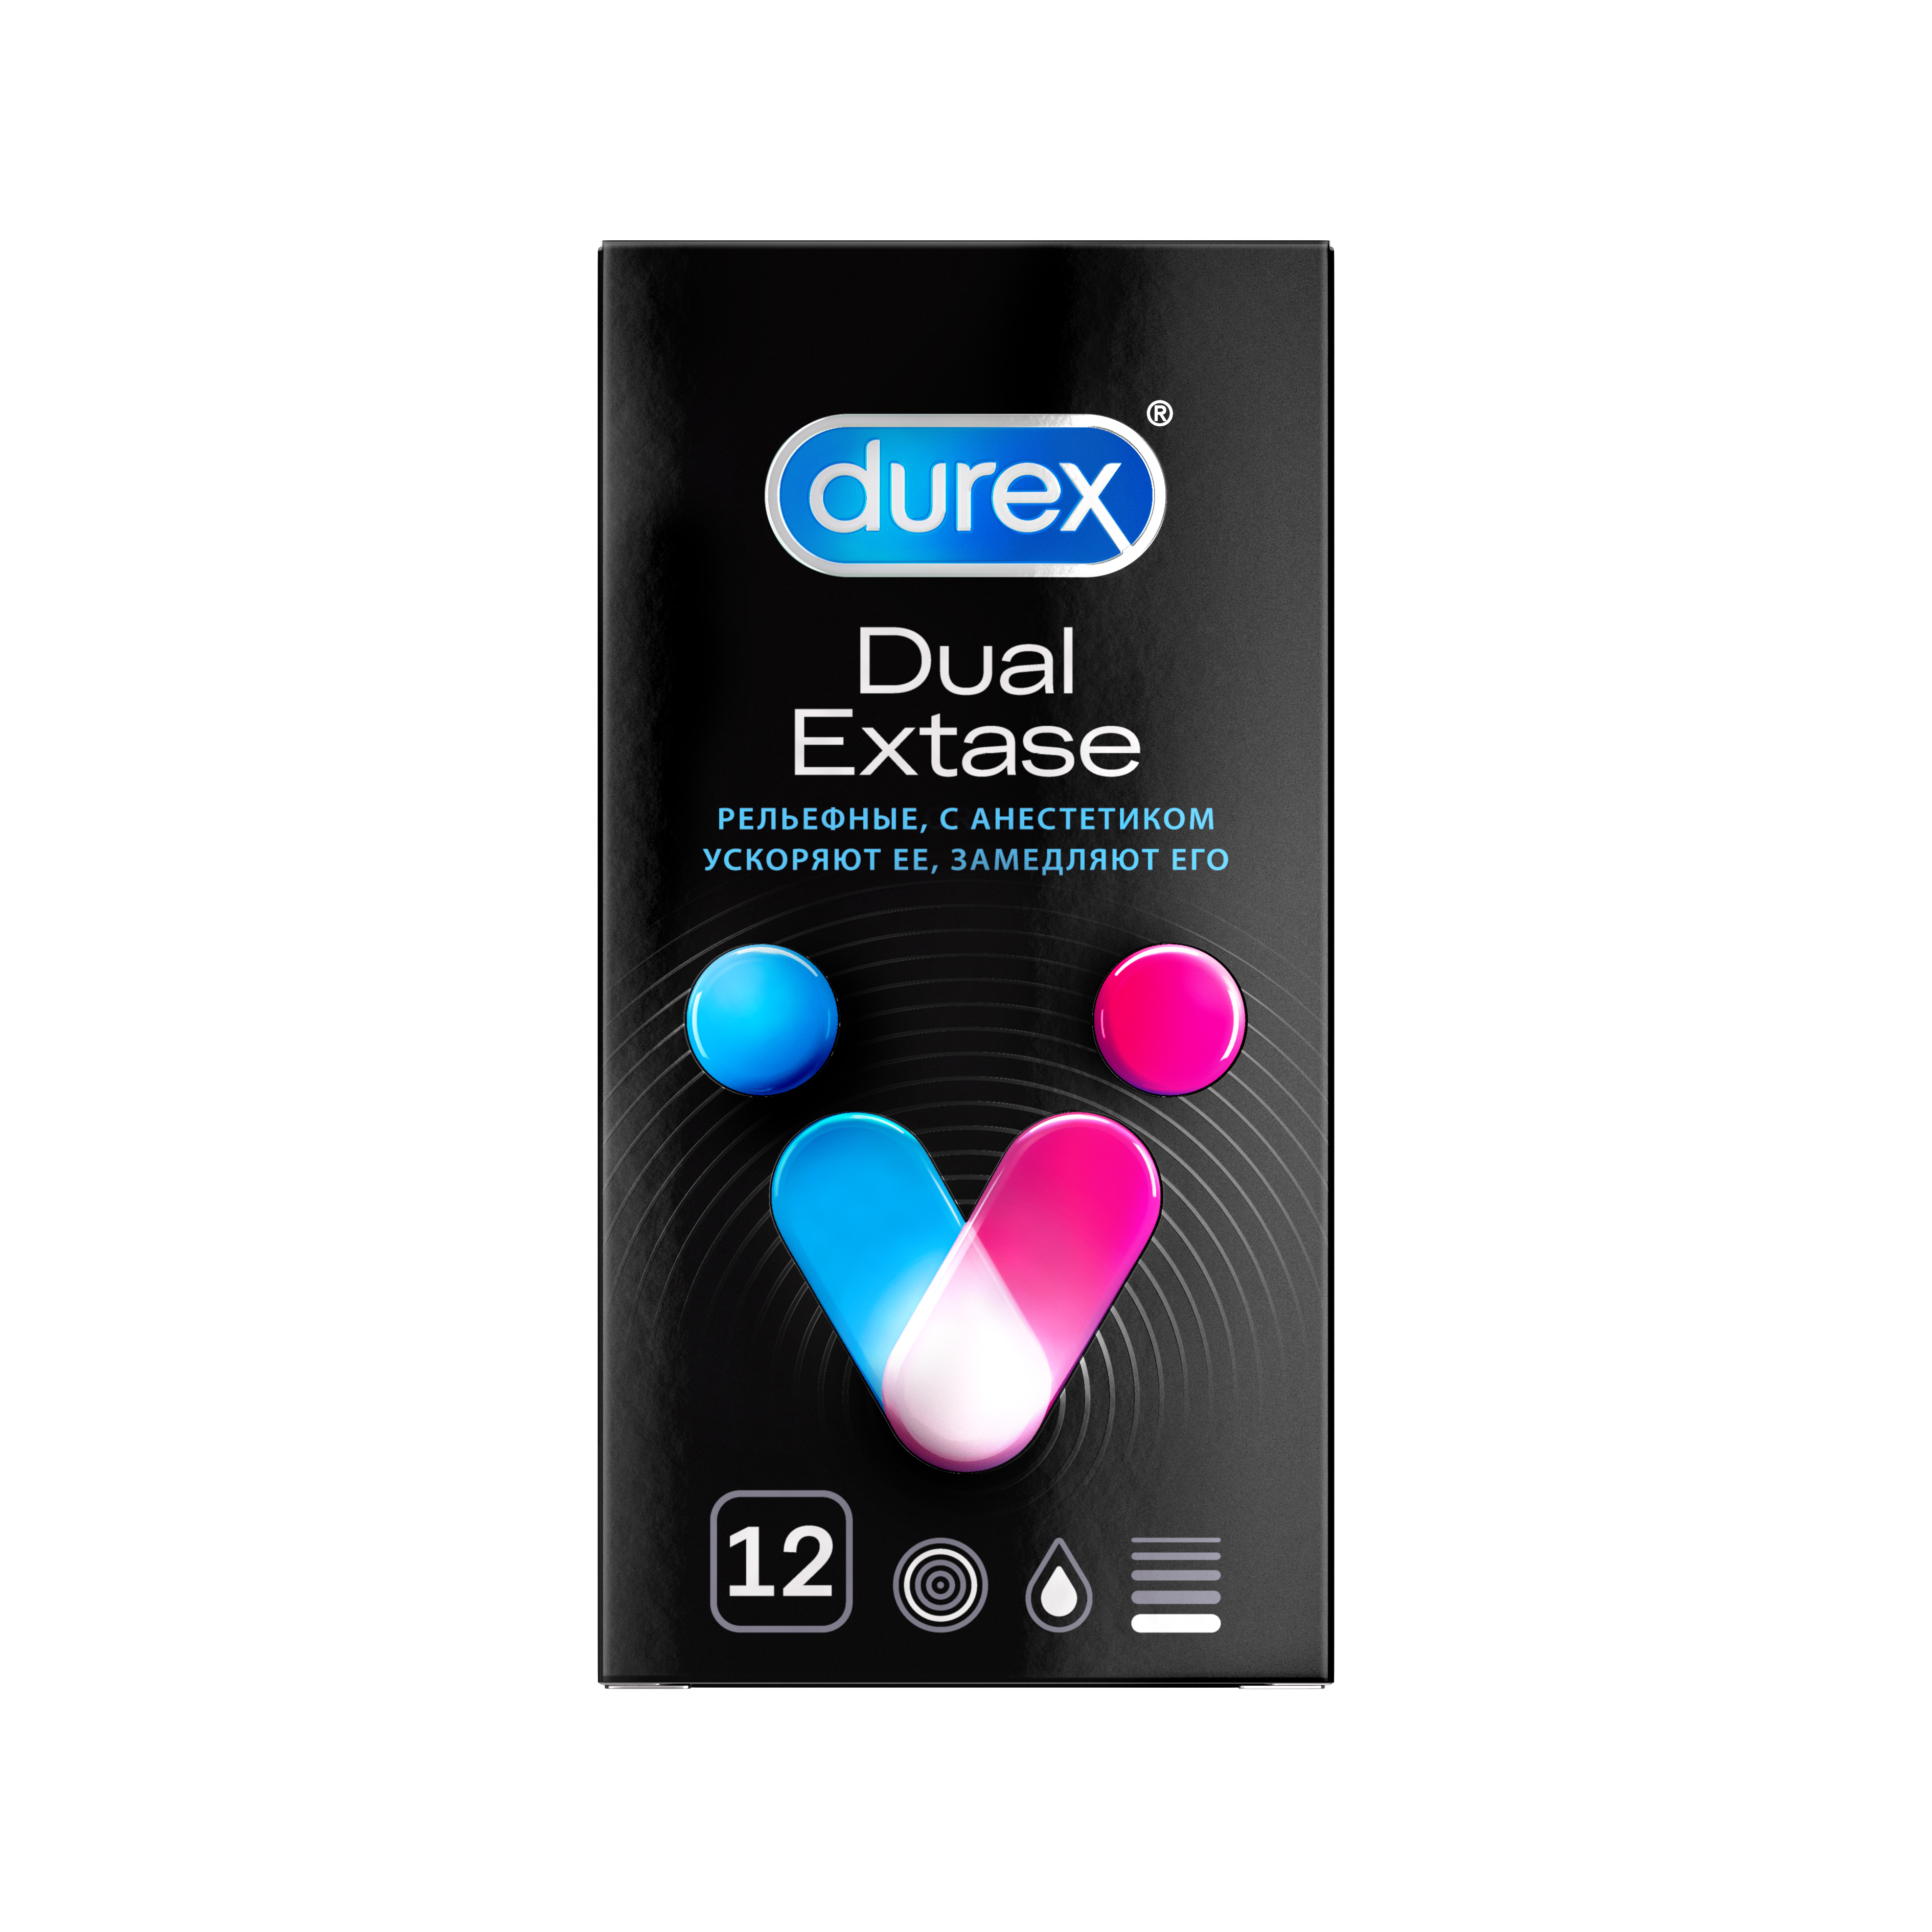 Дюрекс презервативы №12 одновременный оргазм Dual Extase